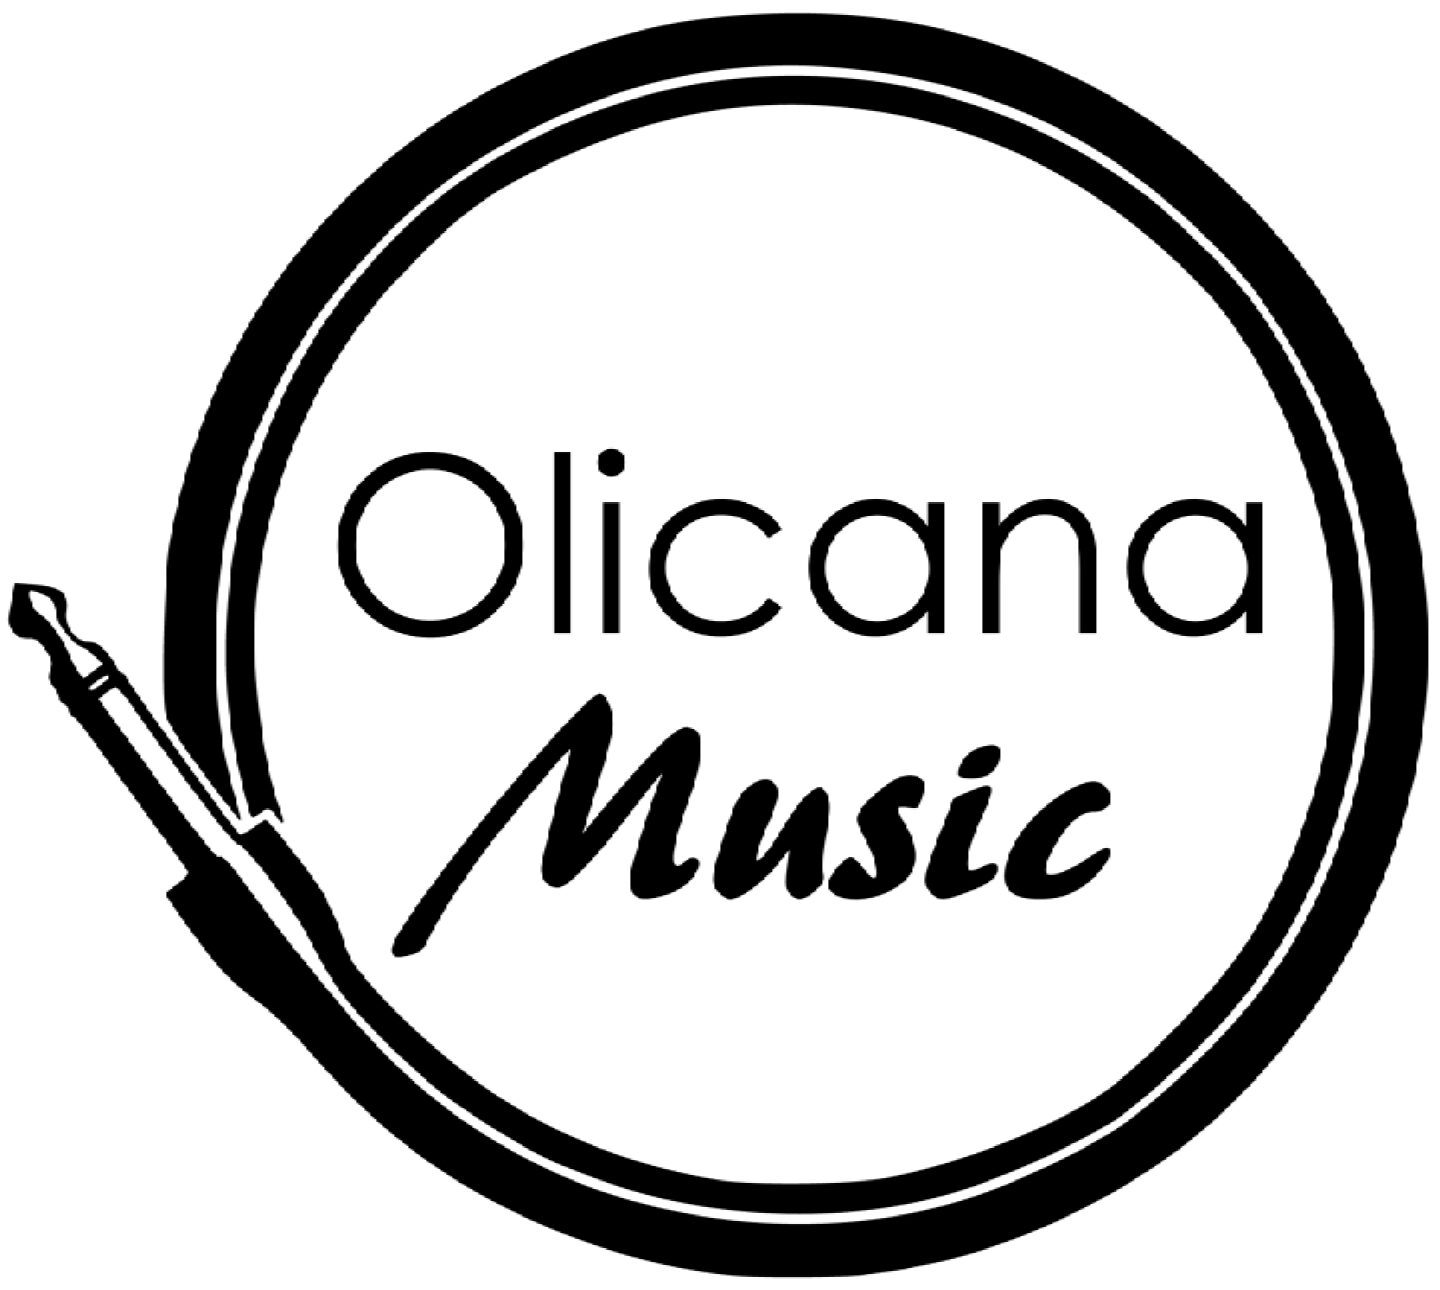 Olicana Music